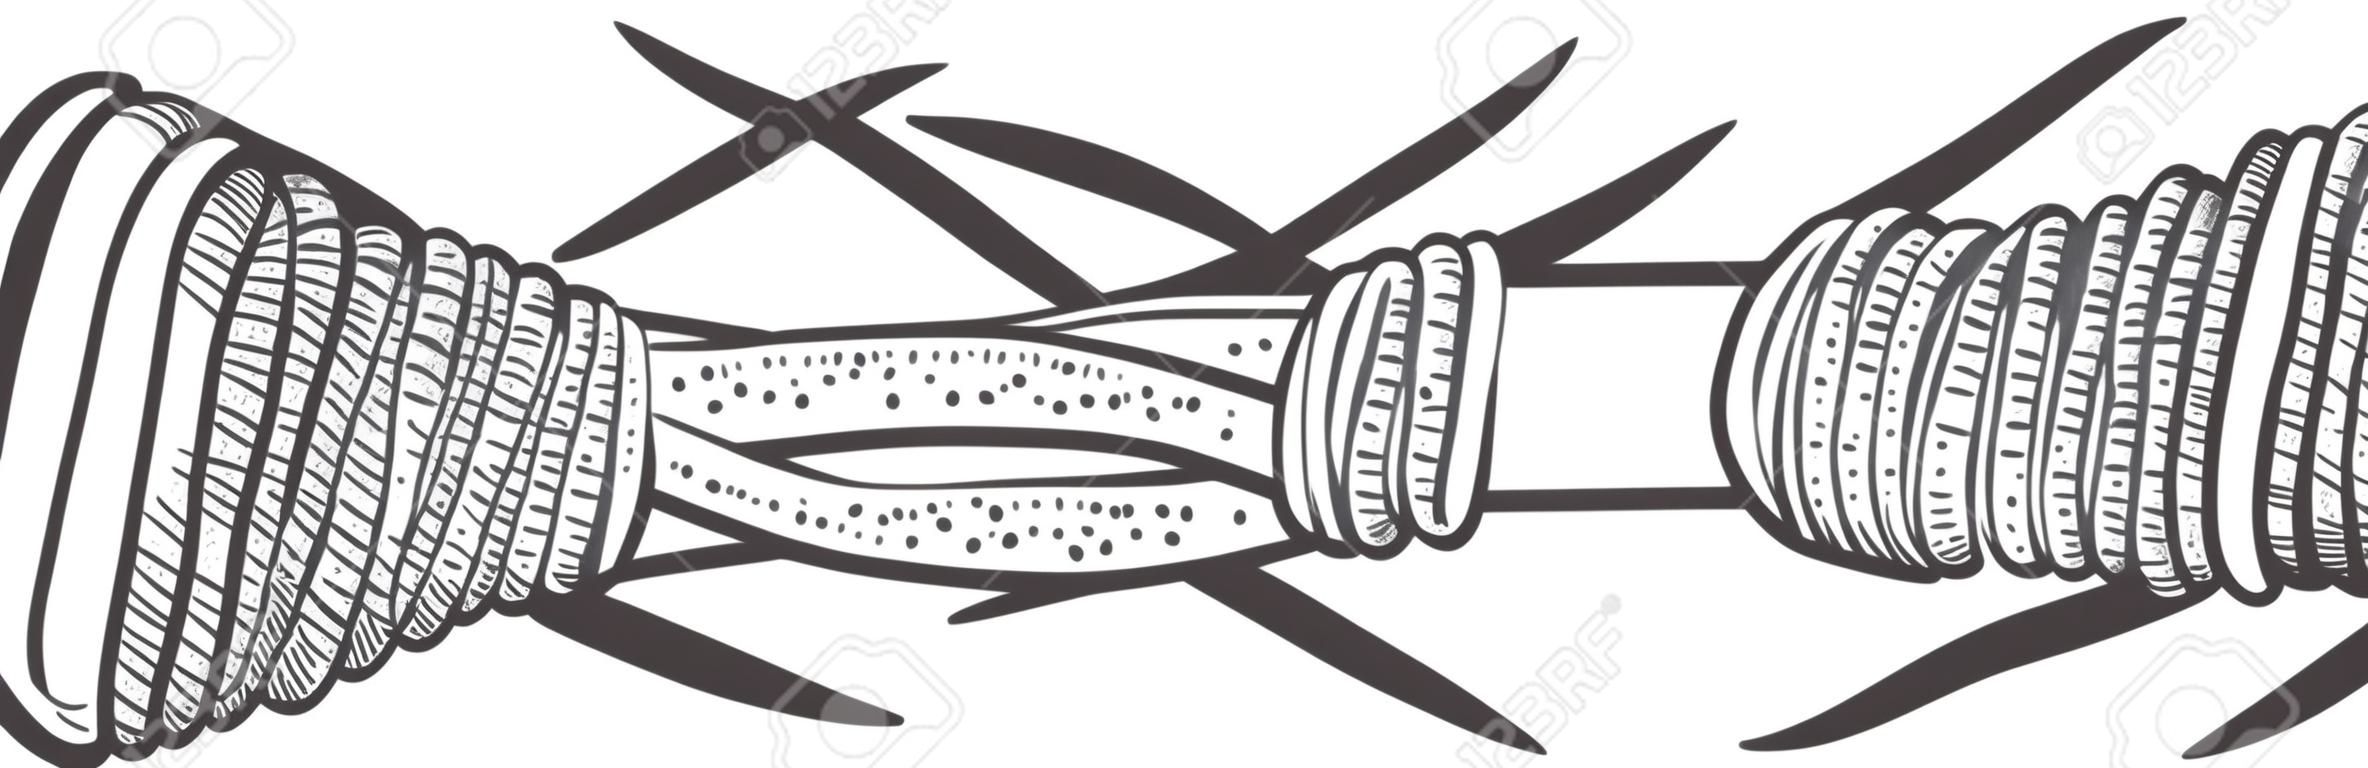 Ilustración de vector de grabado de boceto de alambre de púas. Diseño de impresión de ropa de camiseta. Imitación de tablero de rascar. Imagen dibujada a mano en blanco y negro.